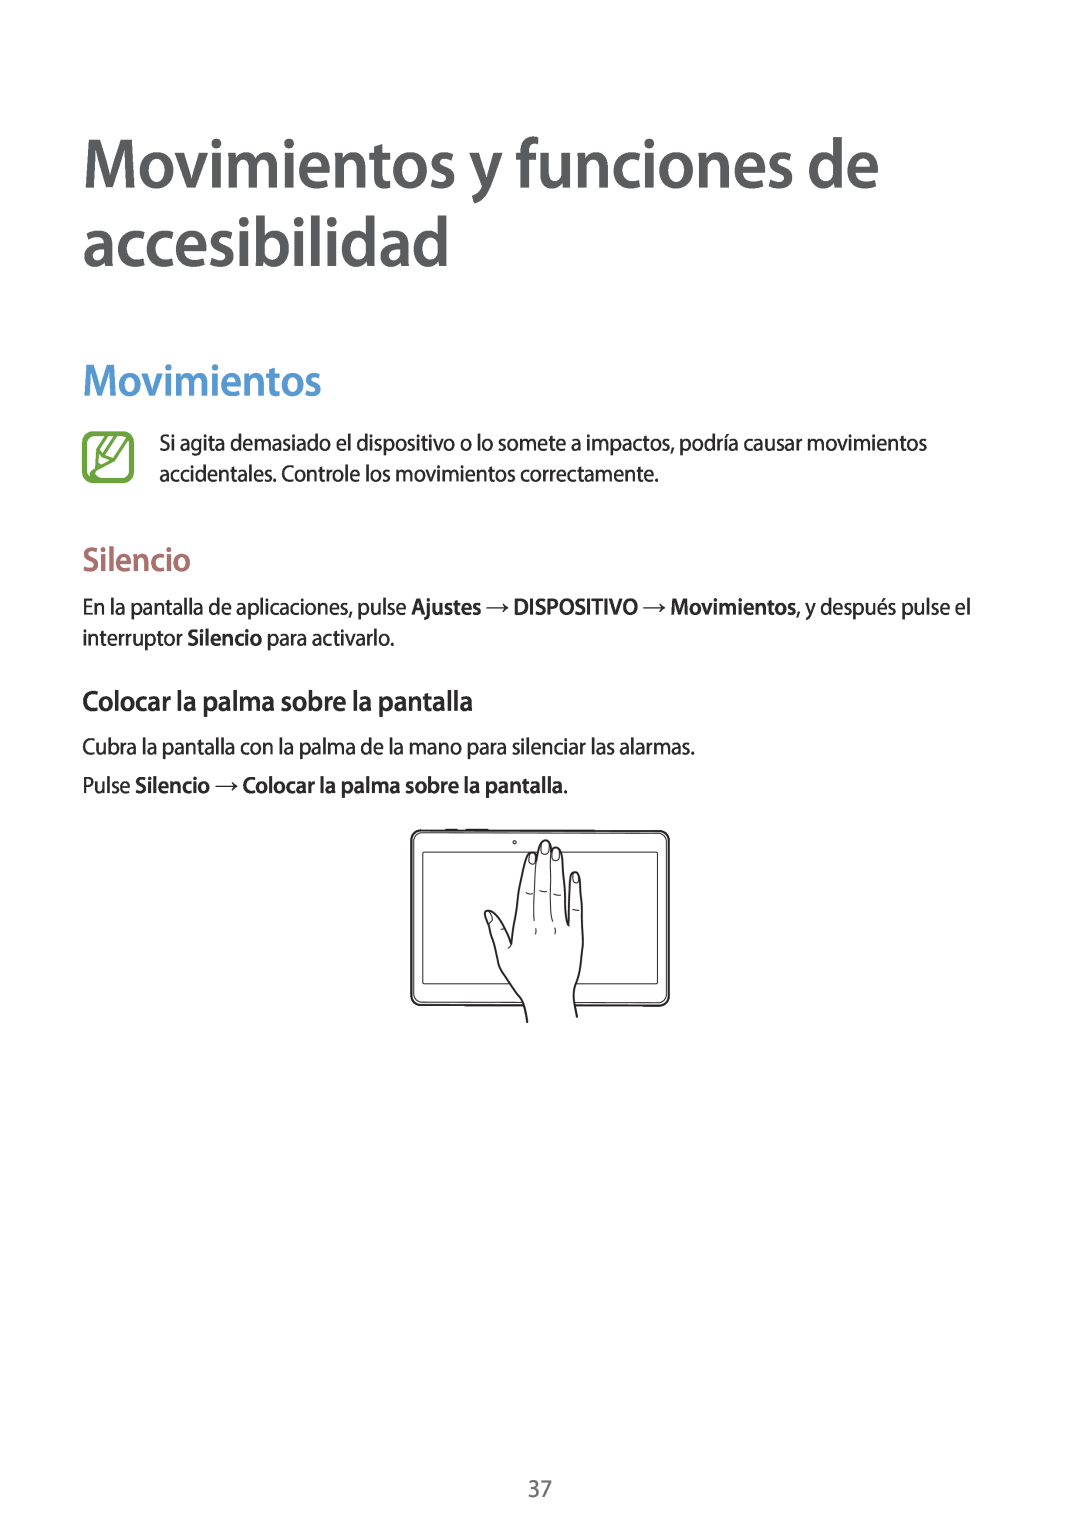 Samsung SM-T800NTSATPH manual Movimientos y funciones de accesibilidad, Silencio, Colocar la palma sobre la pantalla 